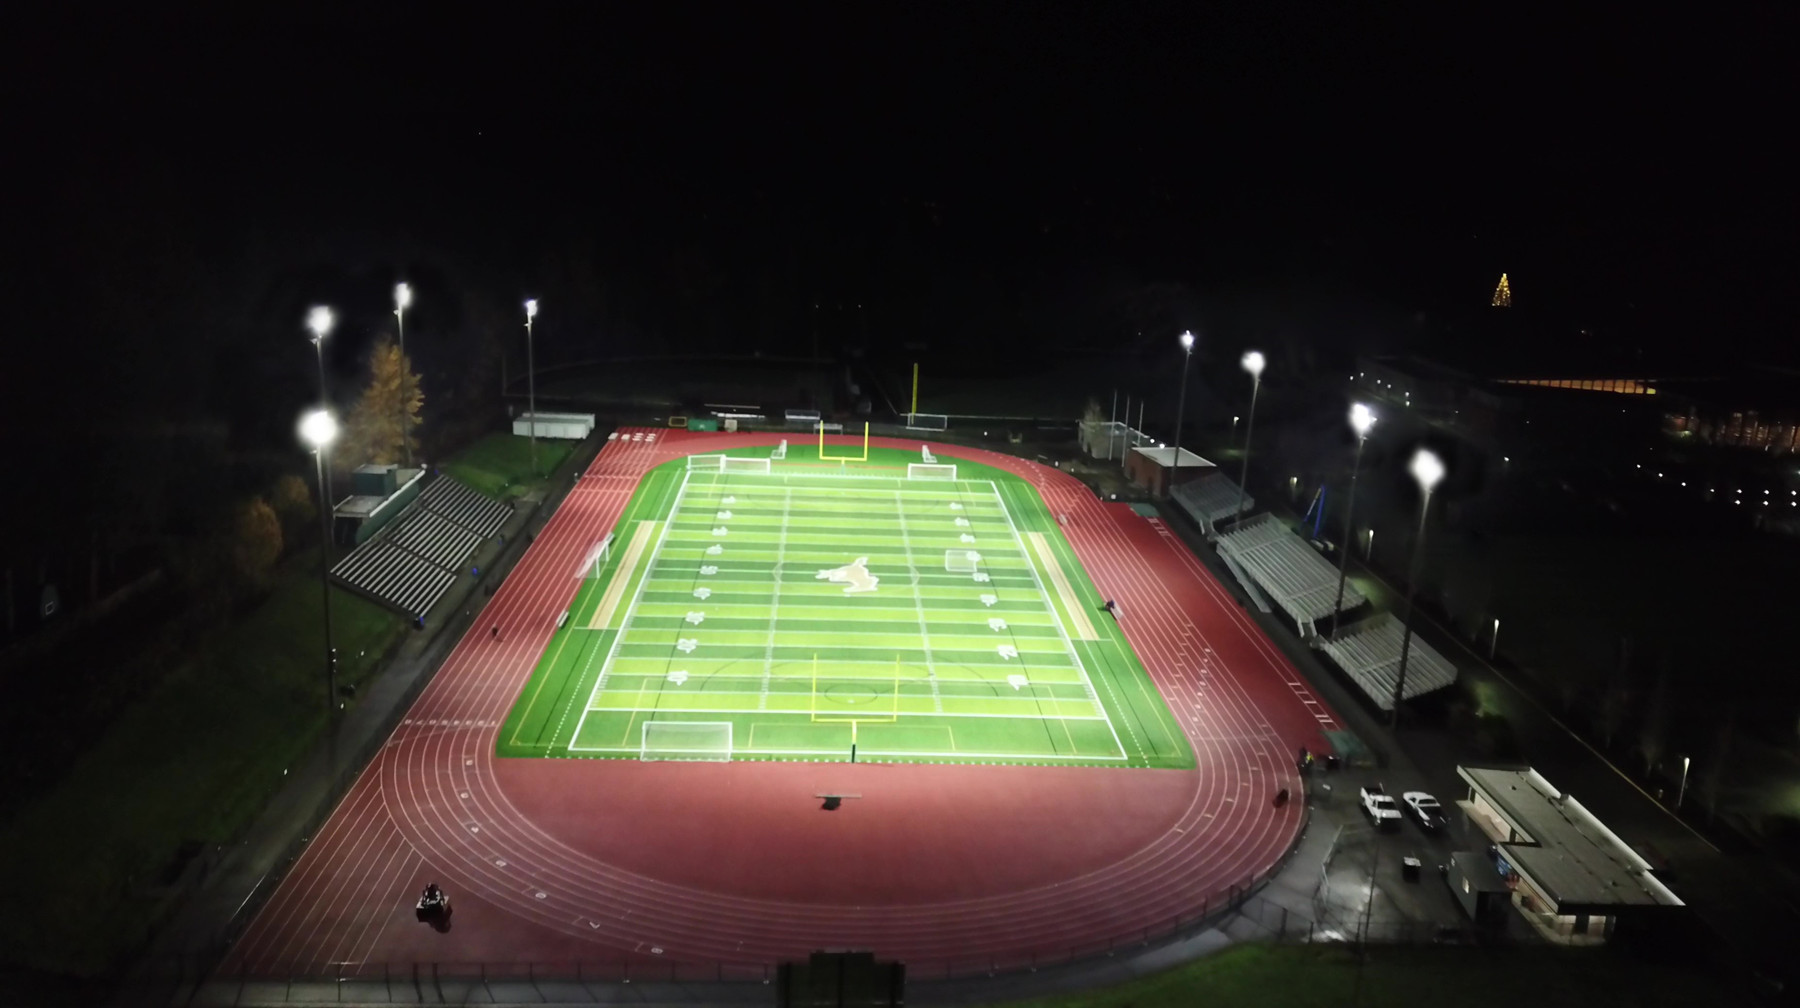 Redmond High School Football Field, USA